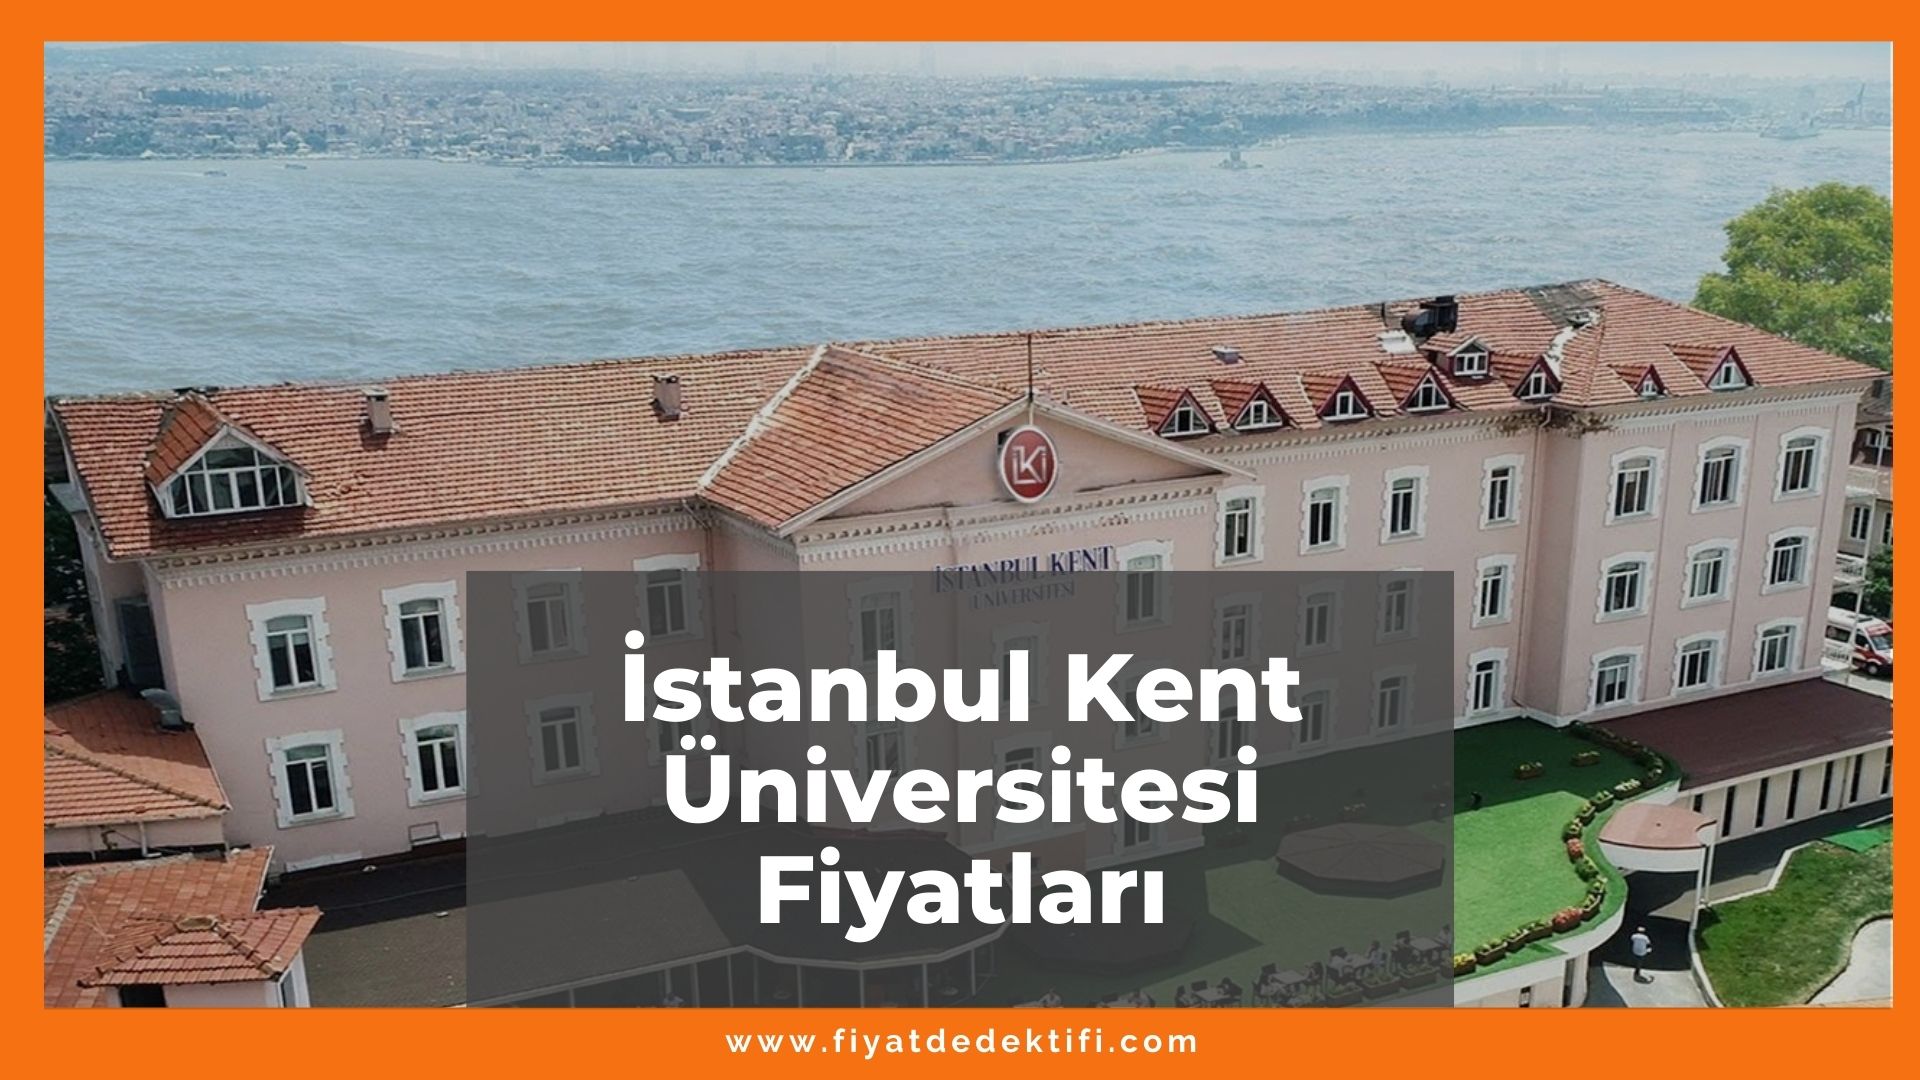 istanbul kent universitesi fiyatlari 2021 dis hekimligi hemsirelik diyetetik bolumu fiyati